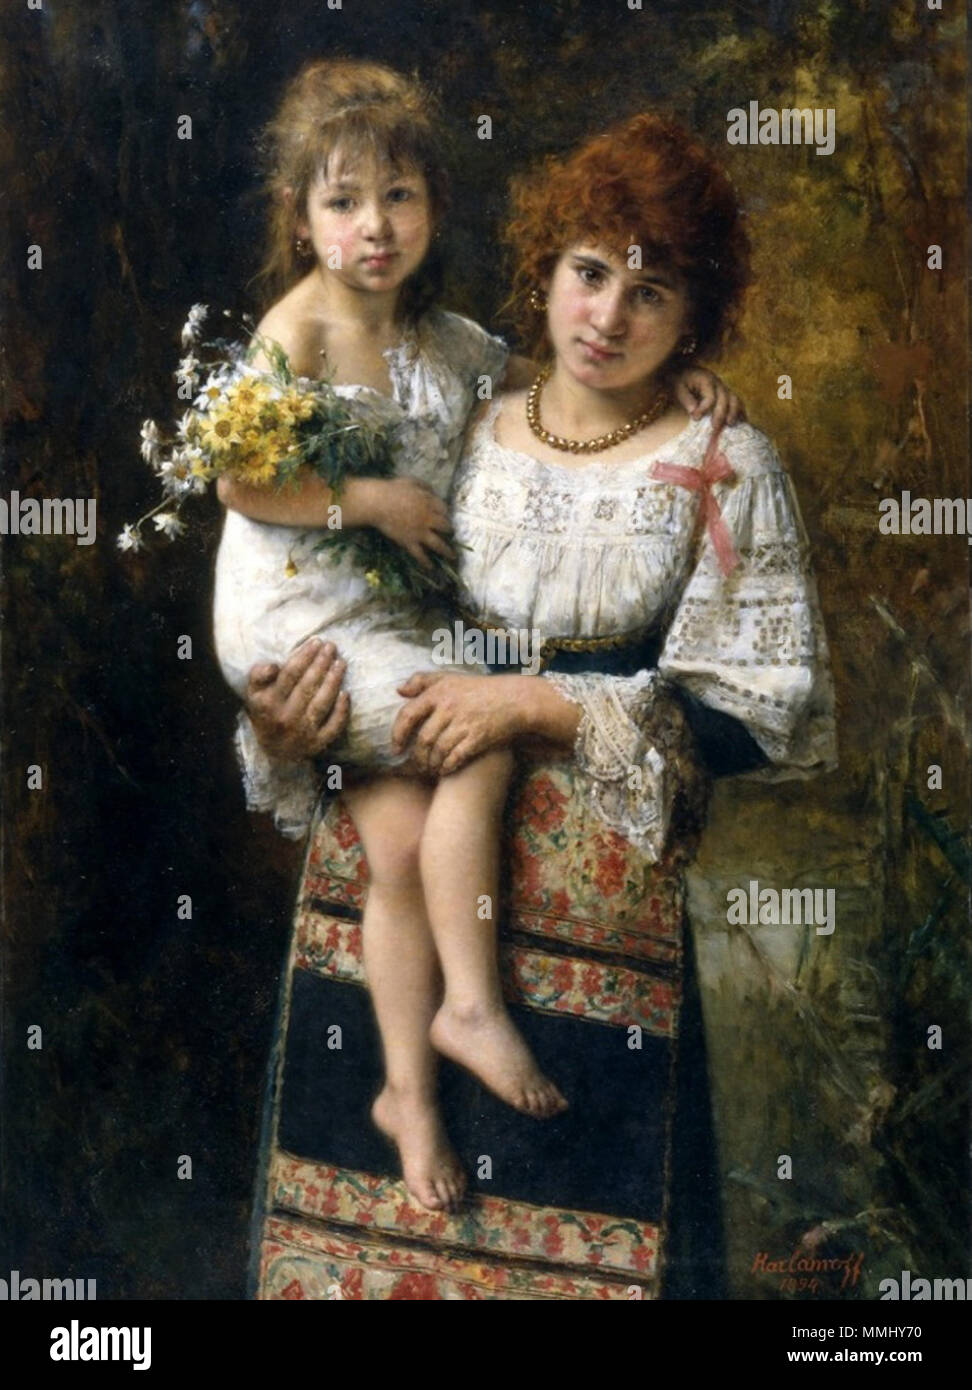 Русская мамаша с дочкой